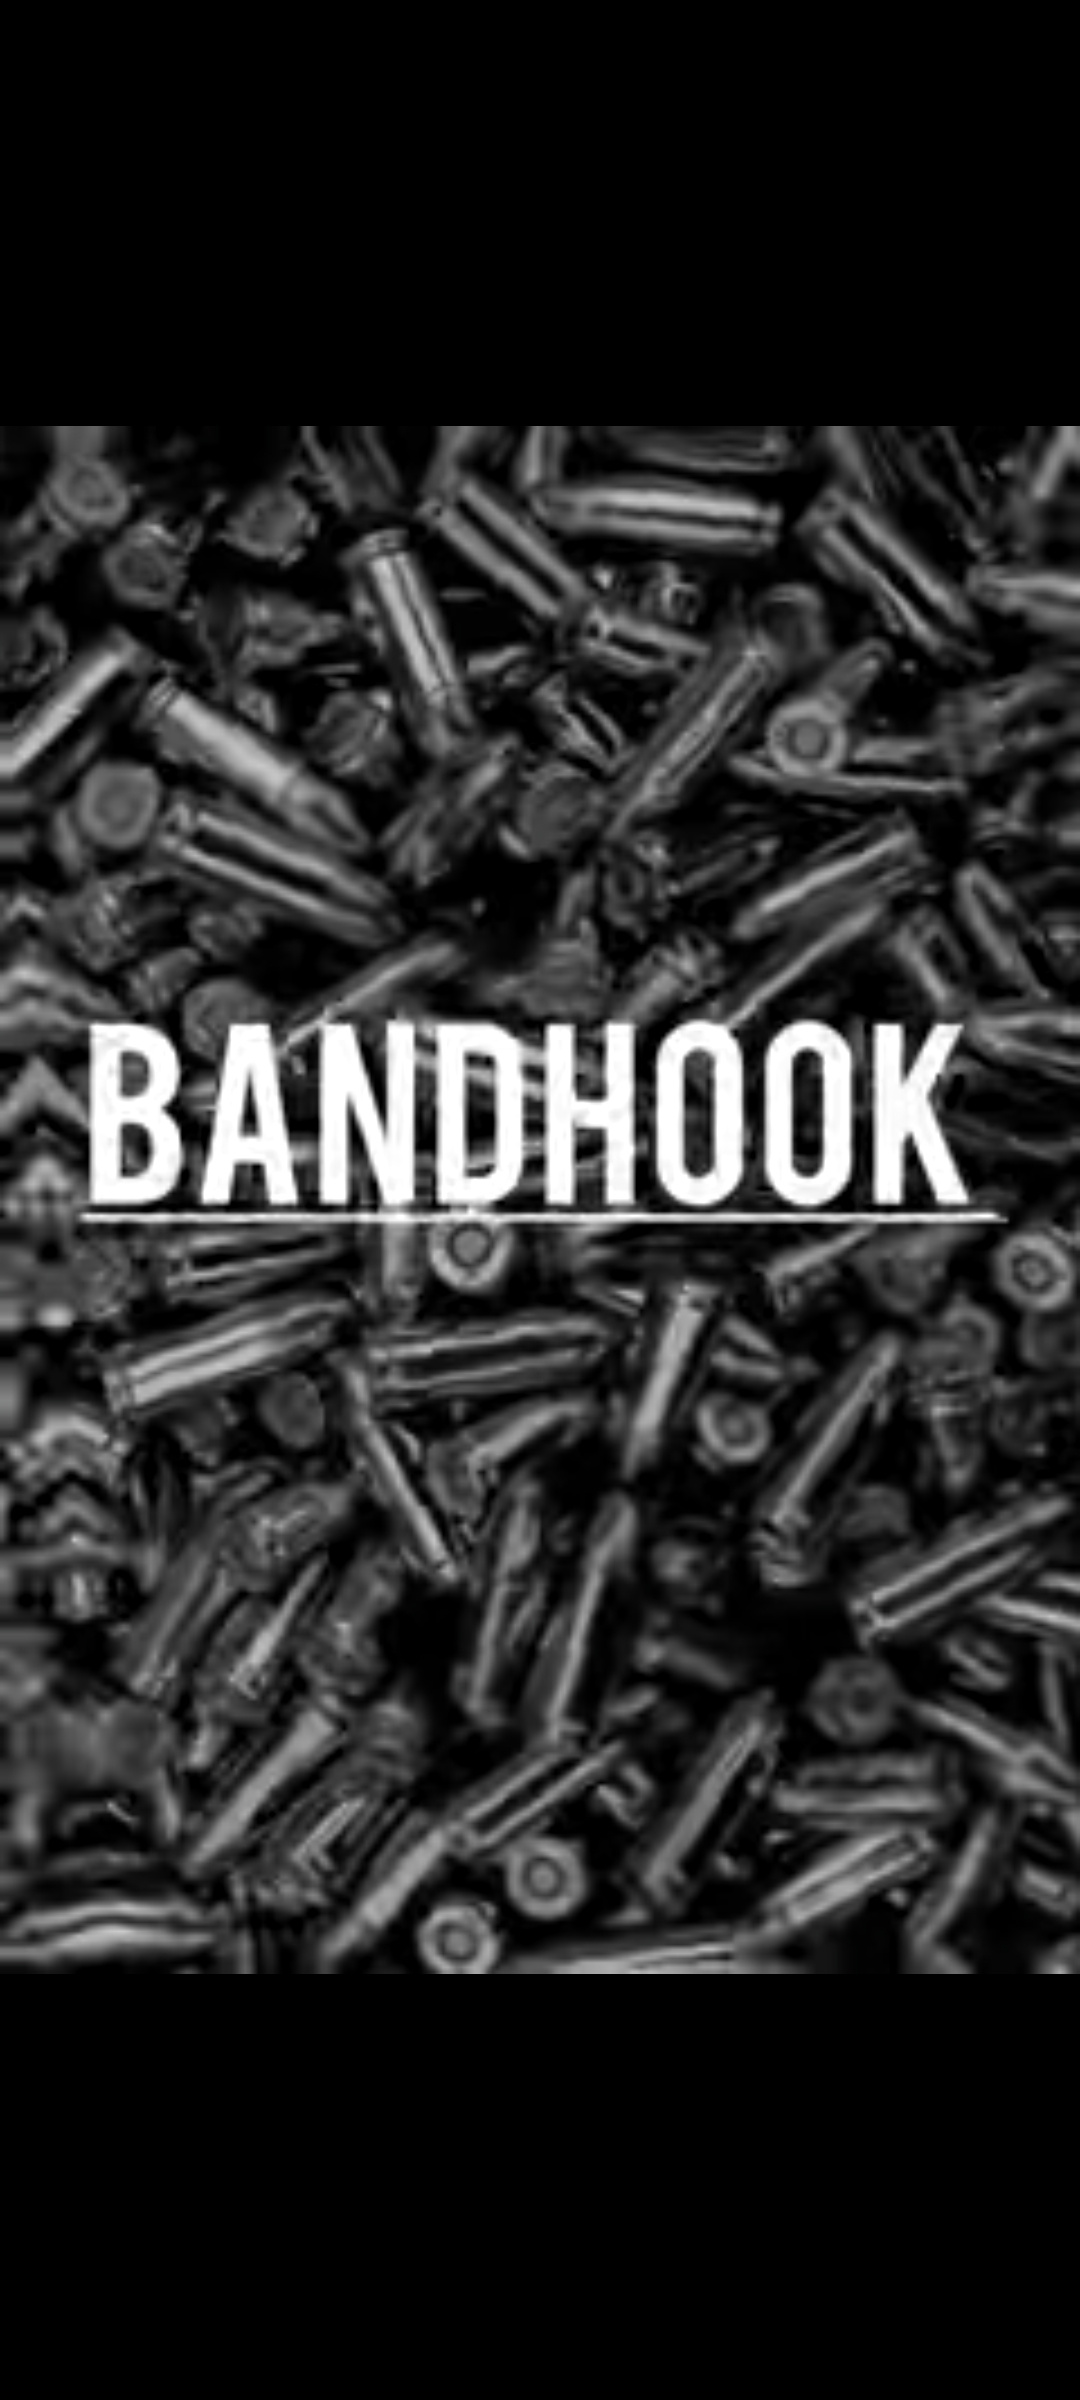 Bandhook song download  Nikhil lakhotra 